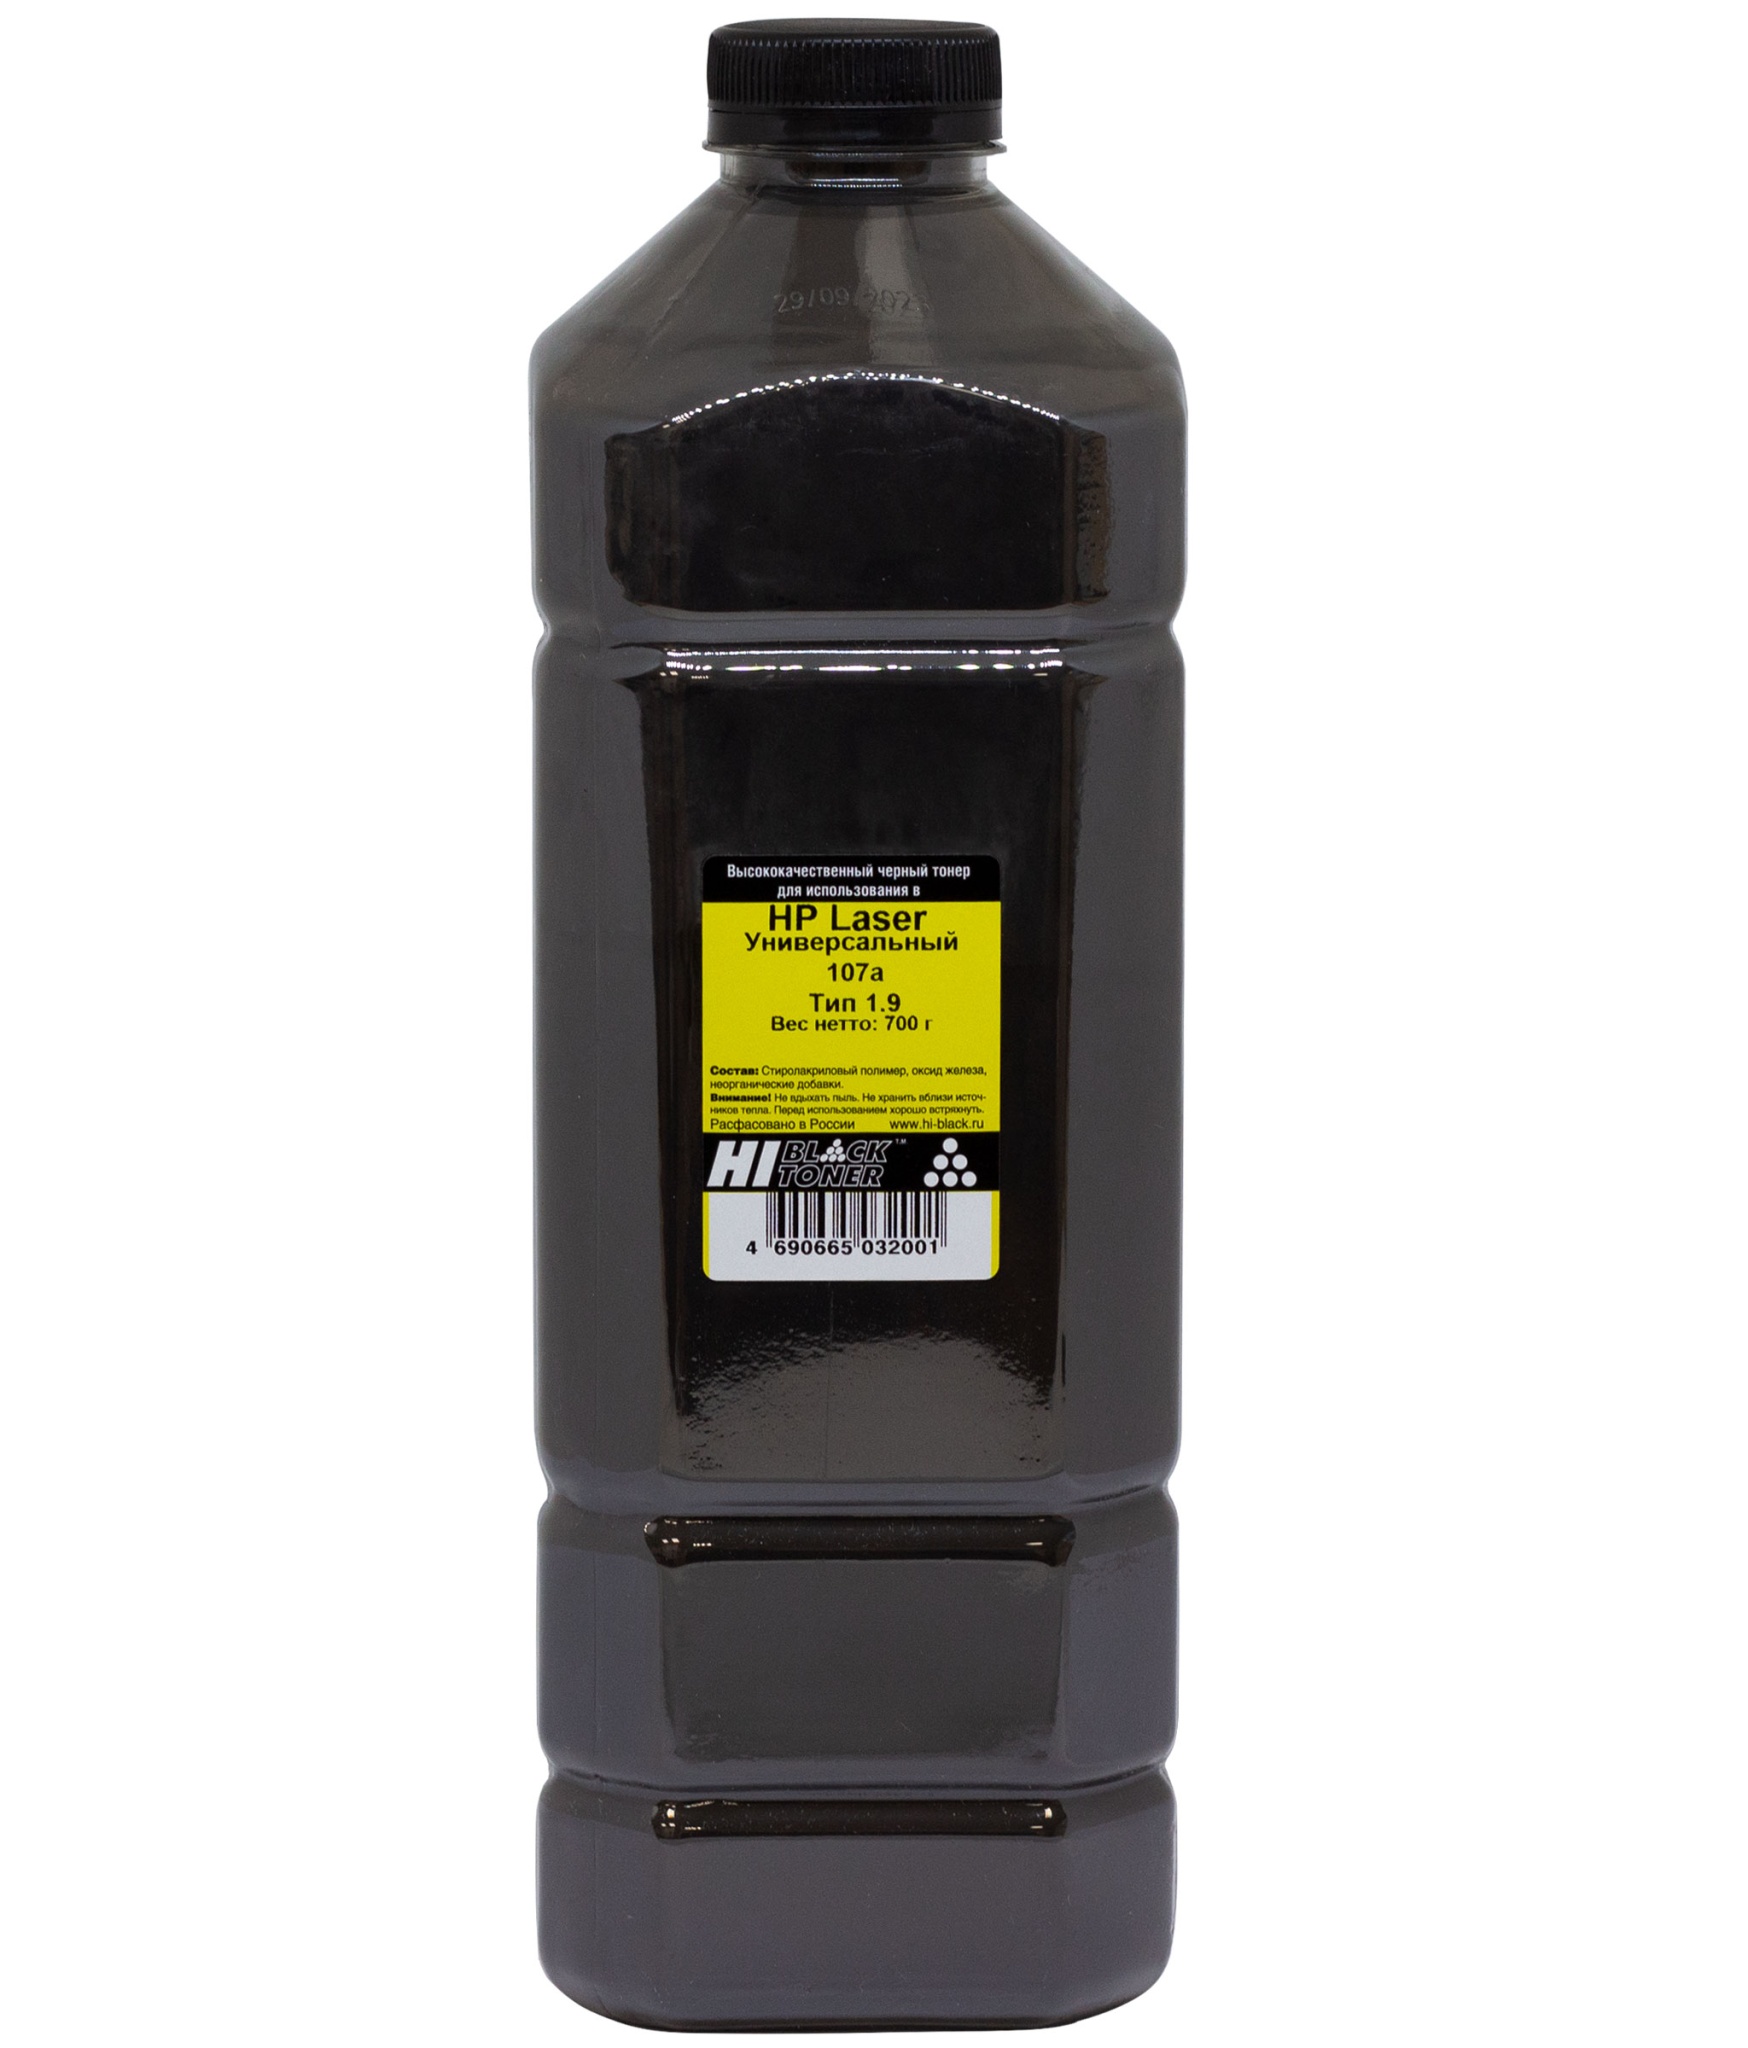 Тонер универсальный Hi-Black (W1106A) для HP Laser 107а, Тип 1.9, чёрный (700 гр.)